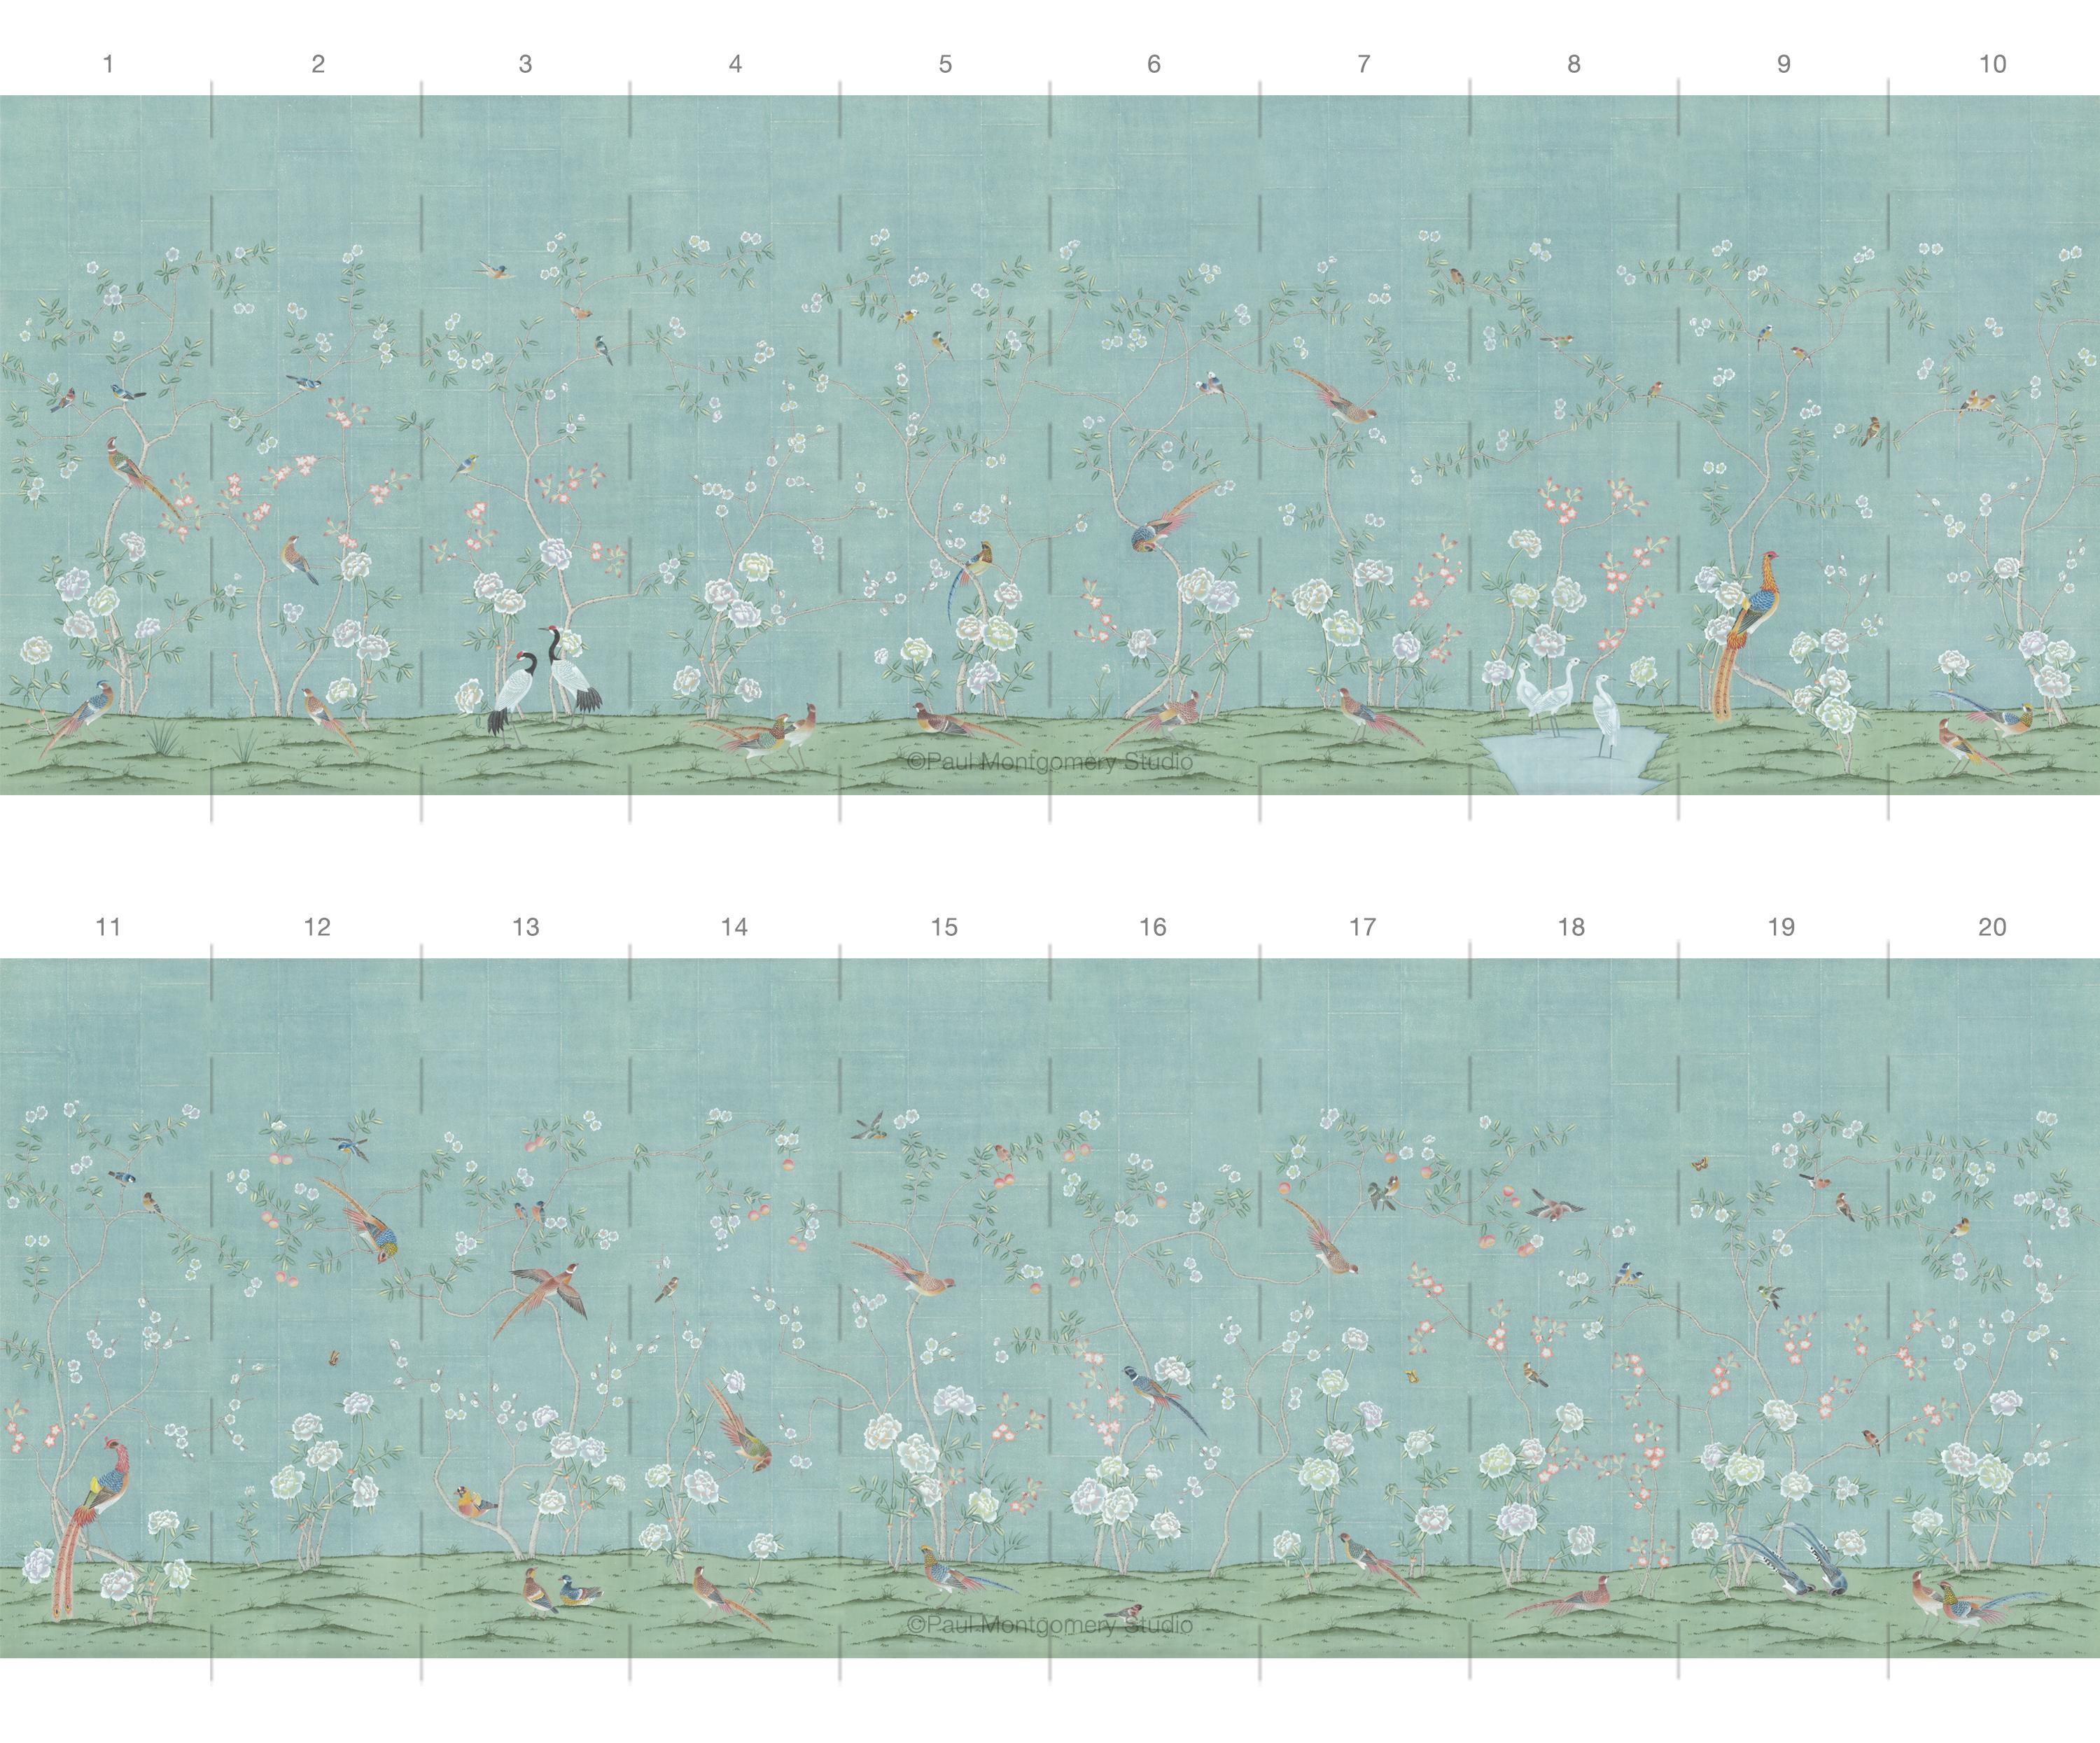 Kew Garden Green Chinoiserie Wallpaper Mural ist eine Kollektion von zwanzig Paneelen, die sich für die Installation in jeder Wohnung mit Standardgröße eignet.  Jede einzelne Tafel ist sechsunddreißig Zentimeter breit und einhundertzwanzig